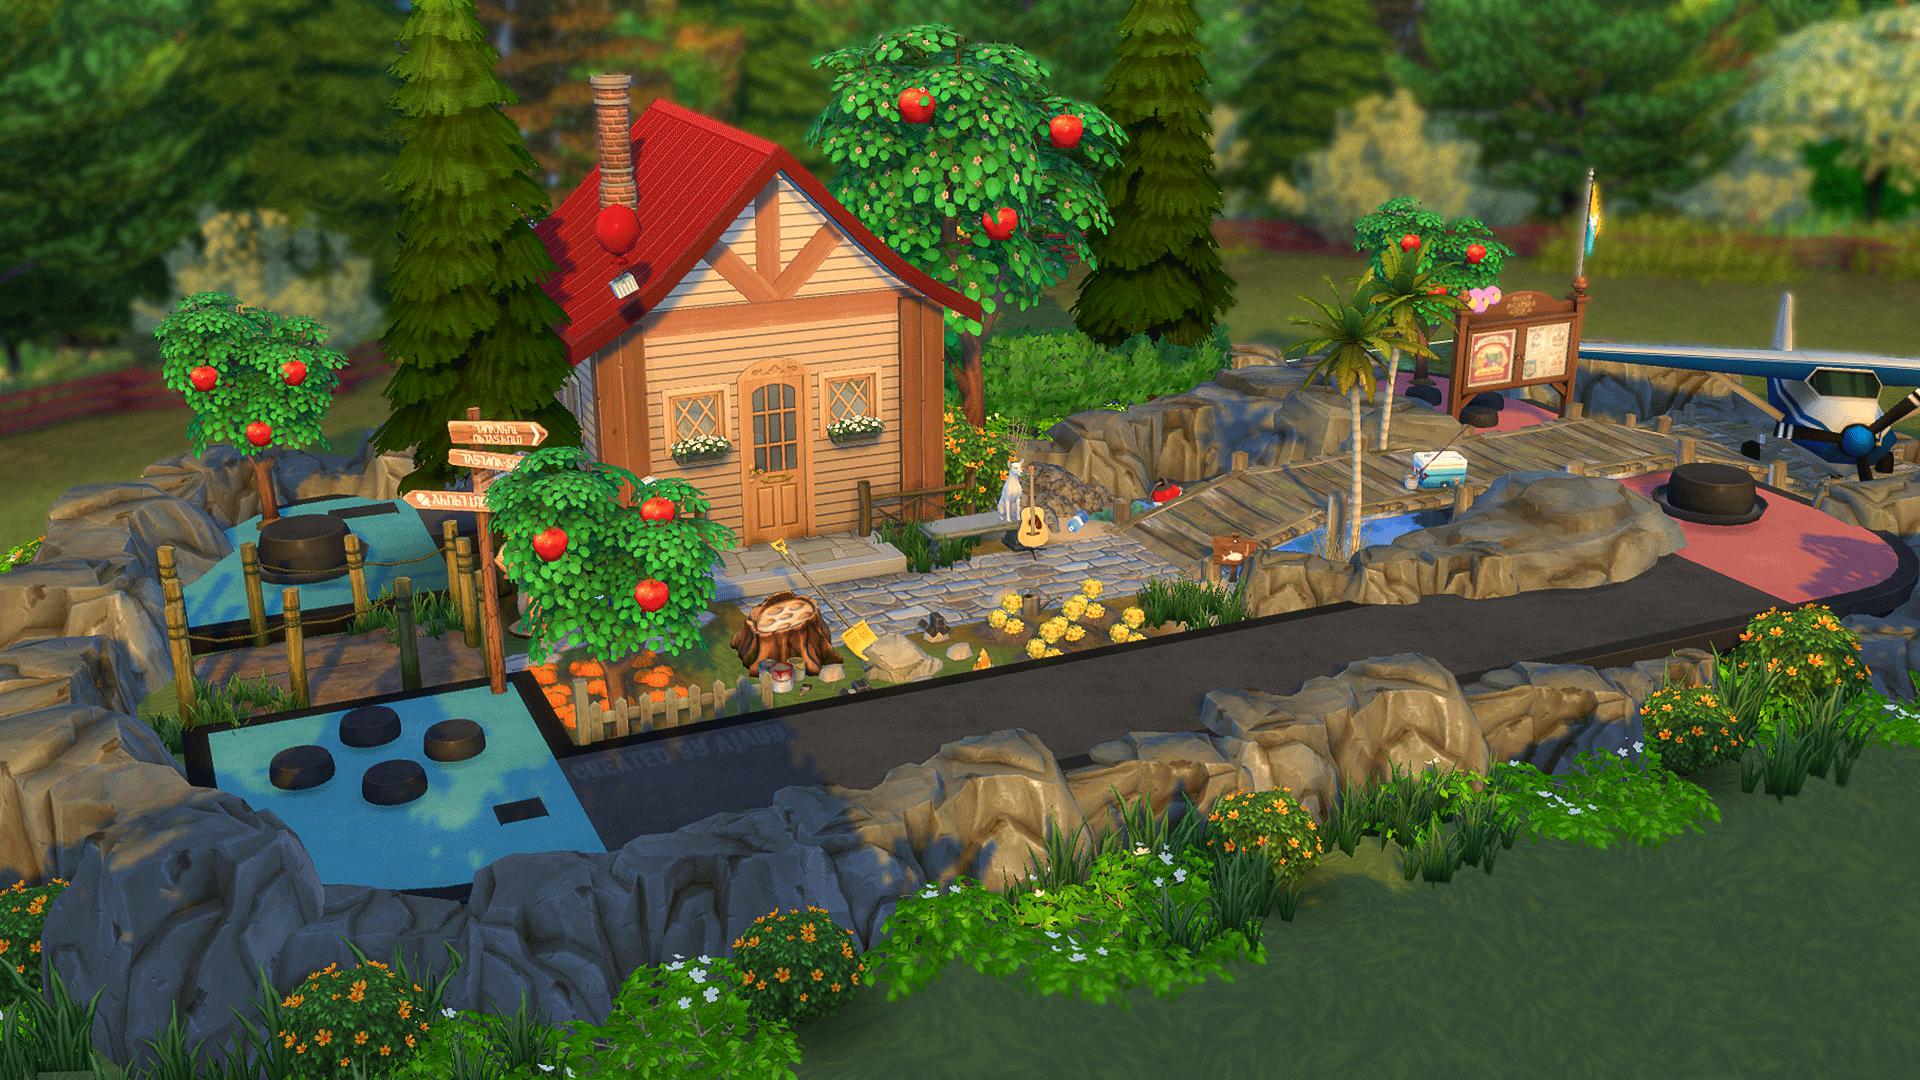 Jogador de Sims 4 cria casa baseada em Animal Crossing: New Horizons